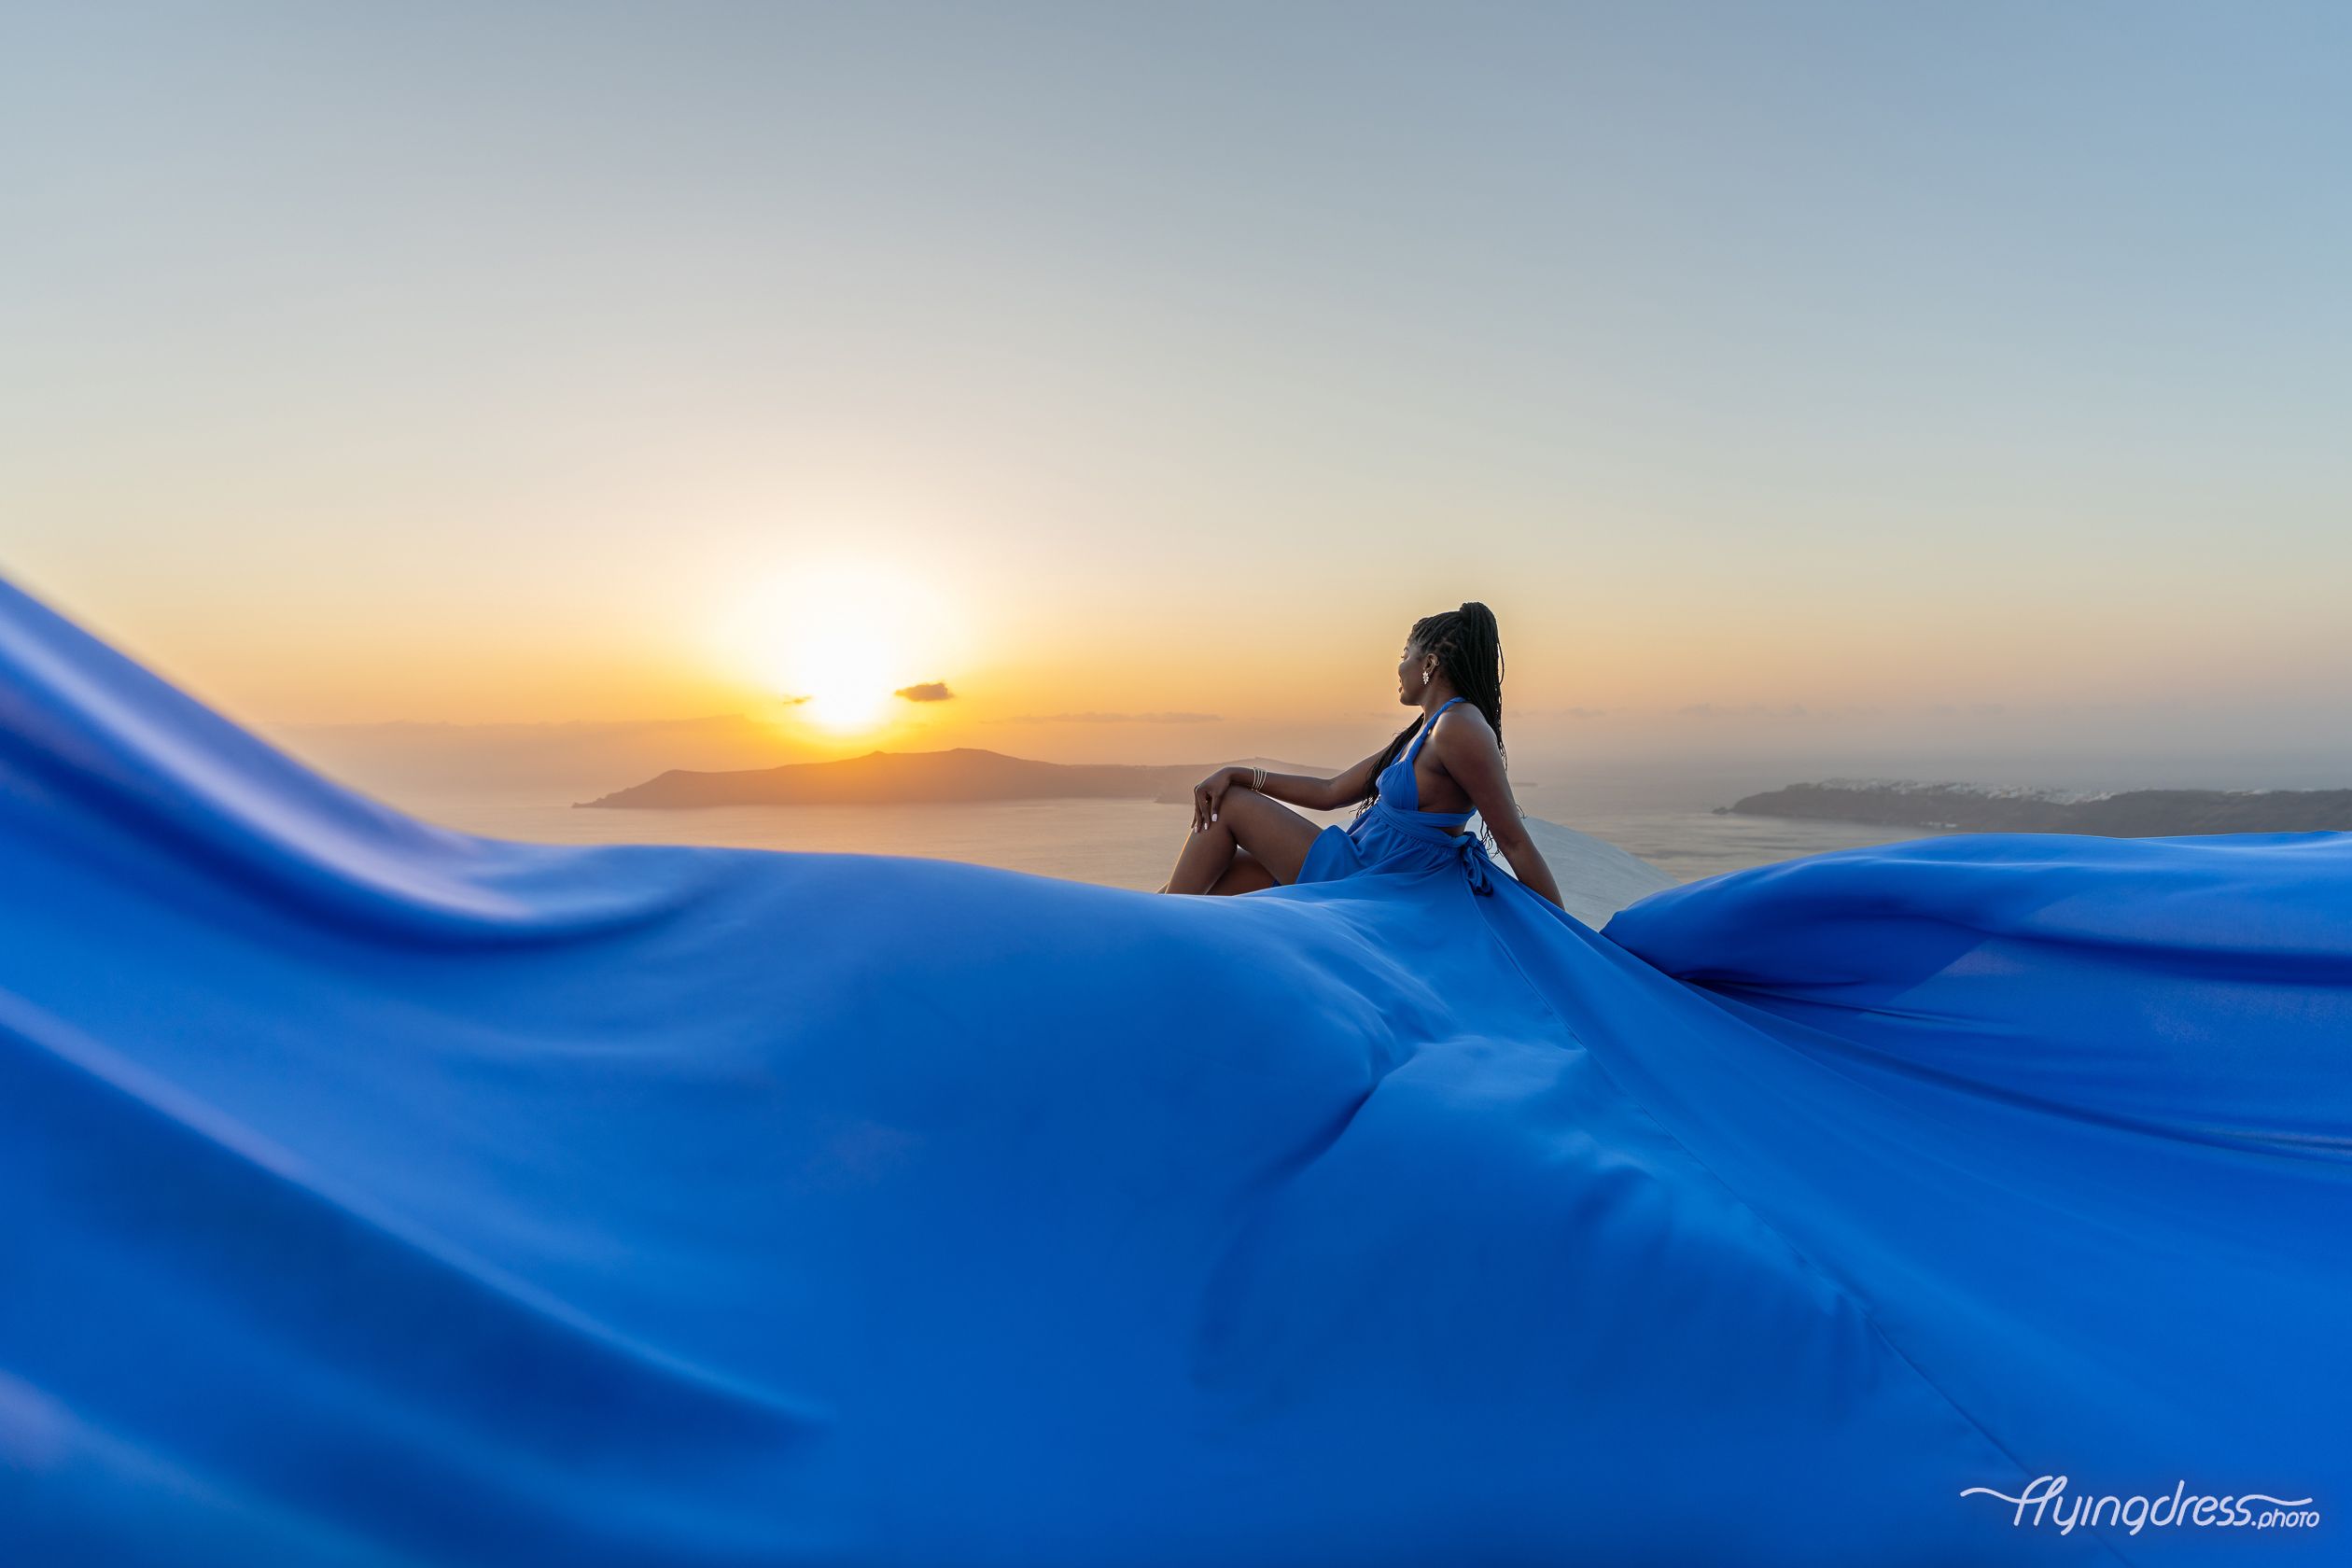 Blue flying dress sunset photoshoot.